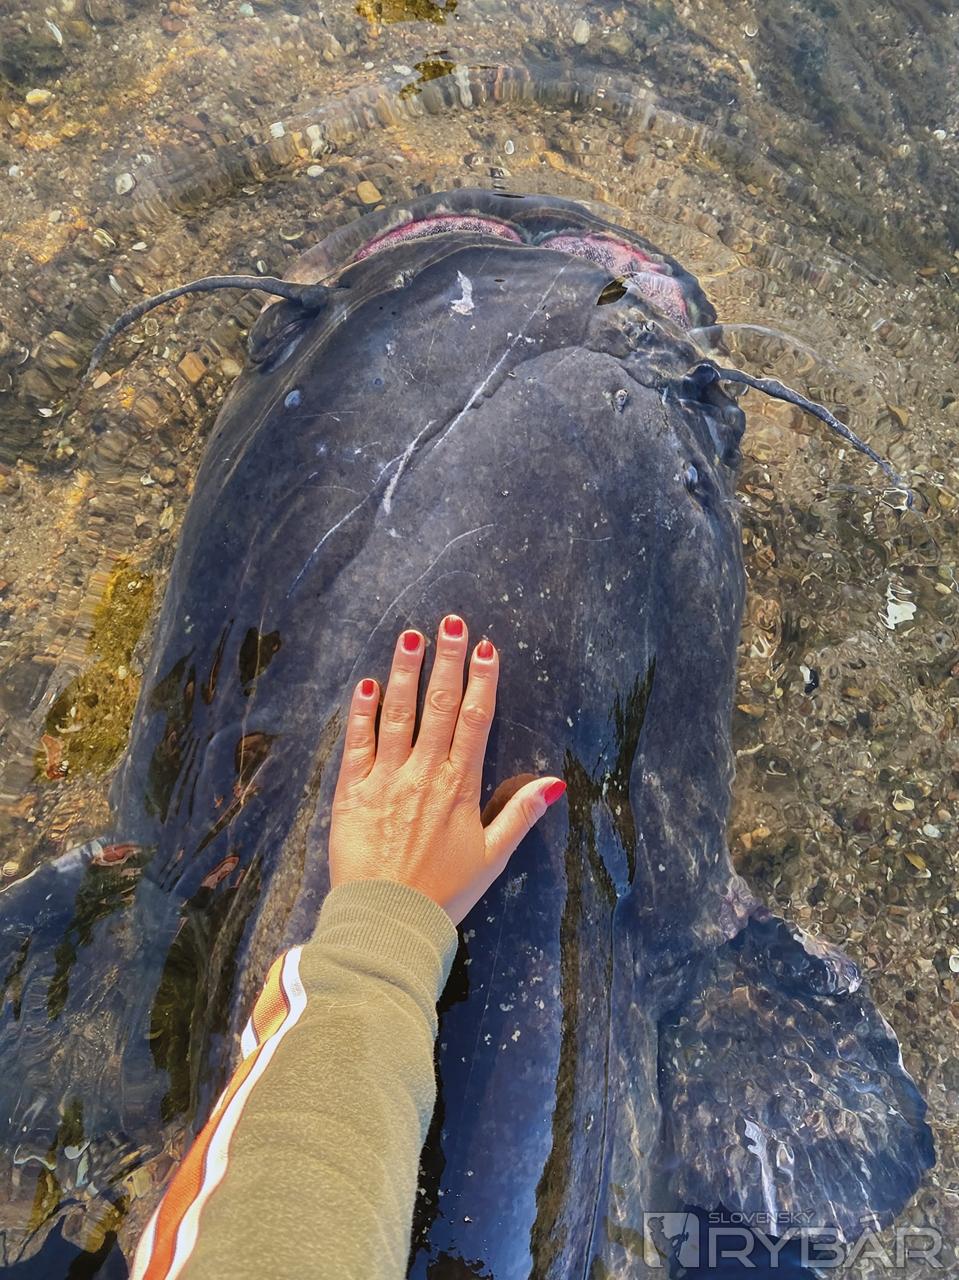 Pre znázornenie veľkosti ryby, Claudia položila na neho svoju ruku, aby bolo vidieť aké má mohutné telo.